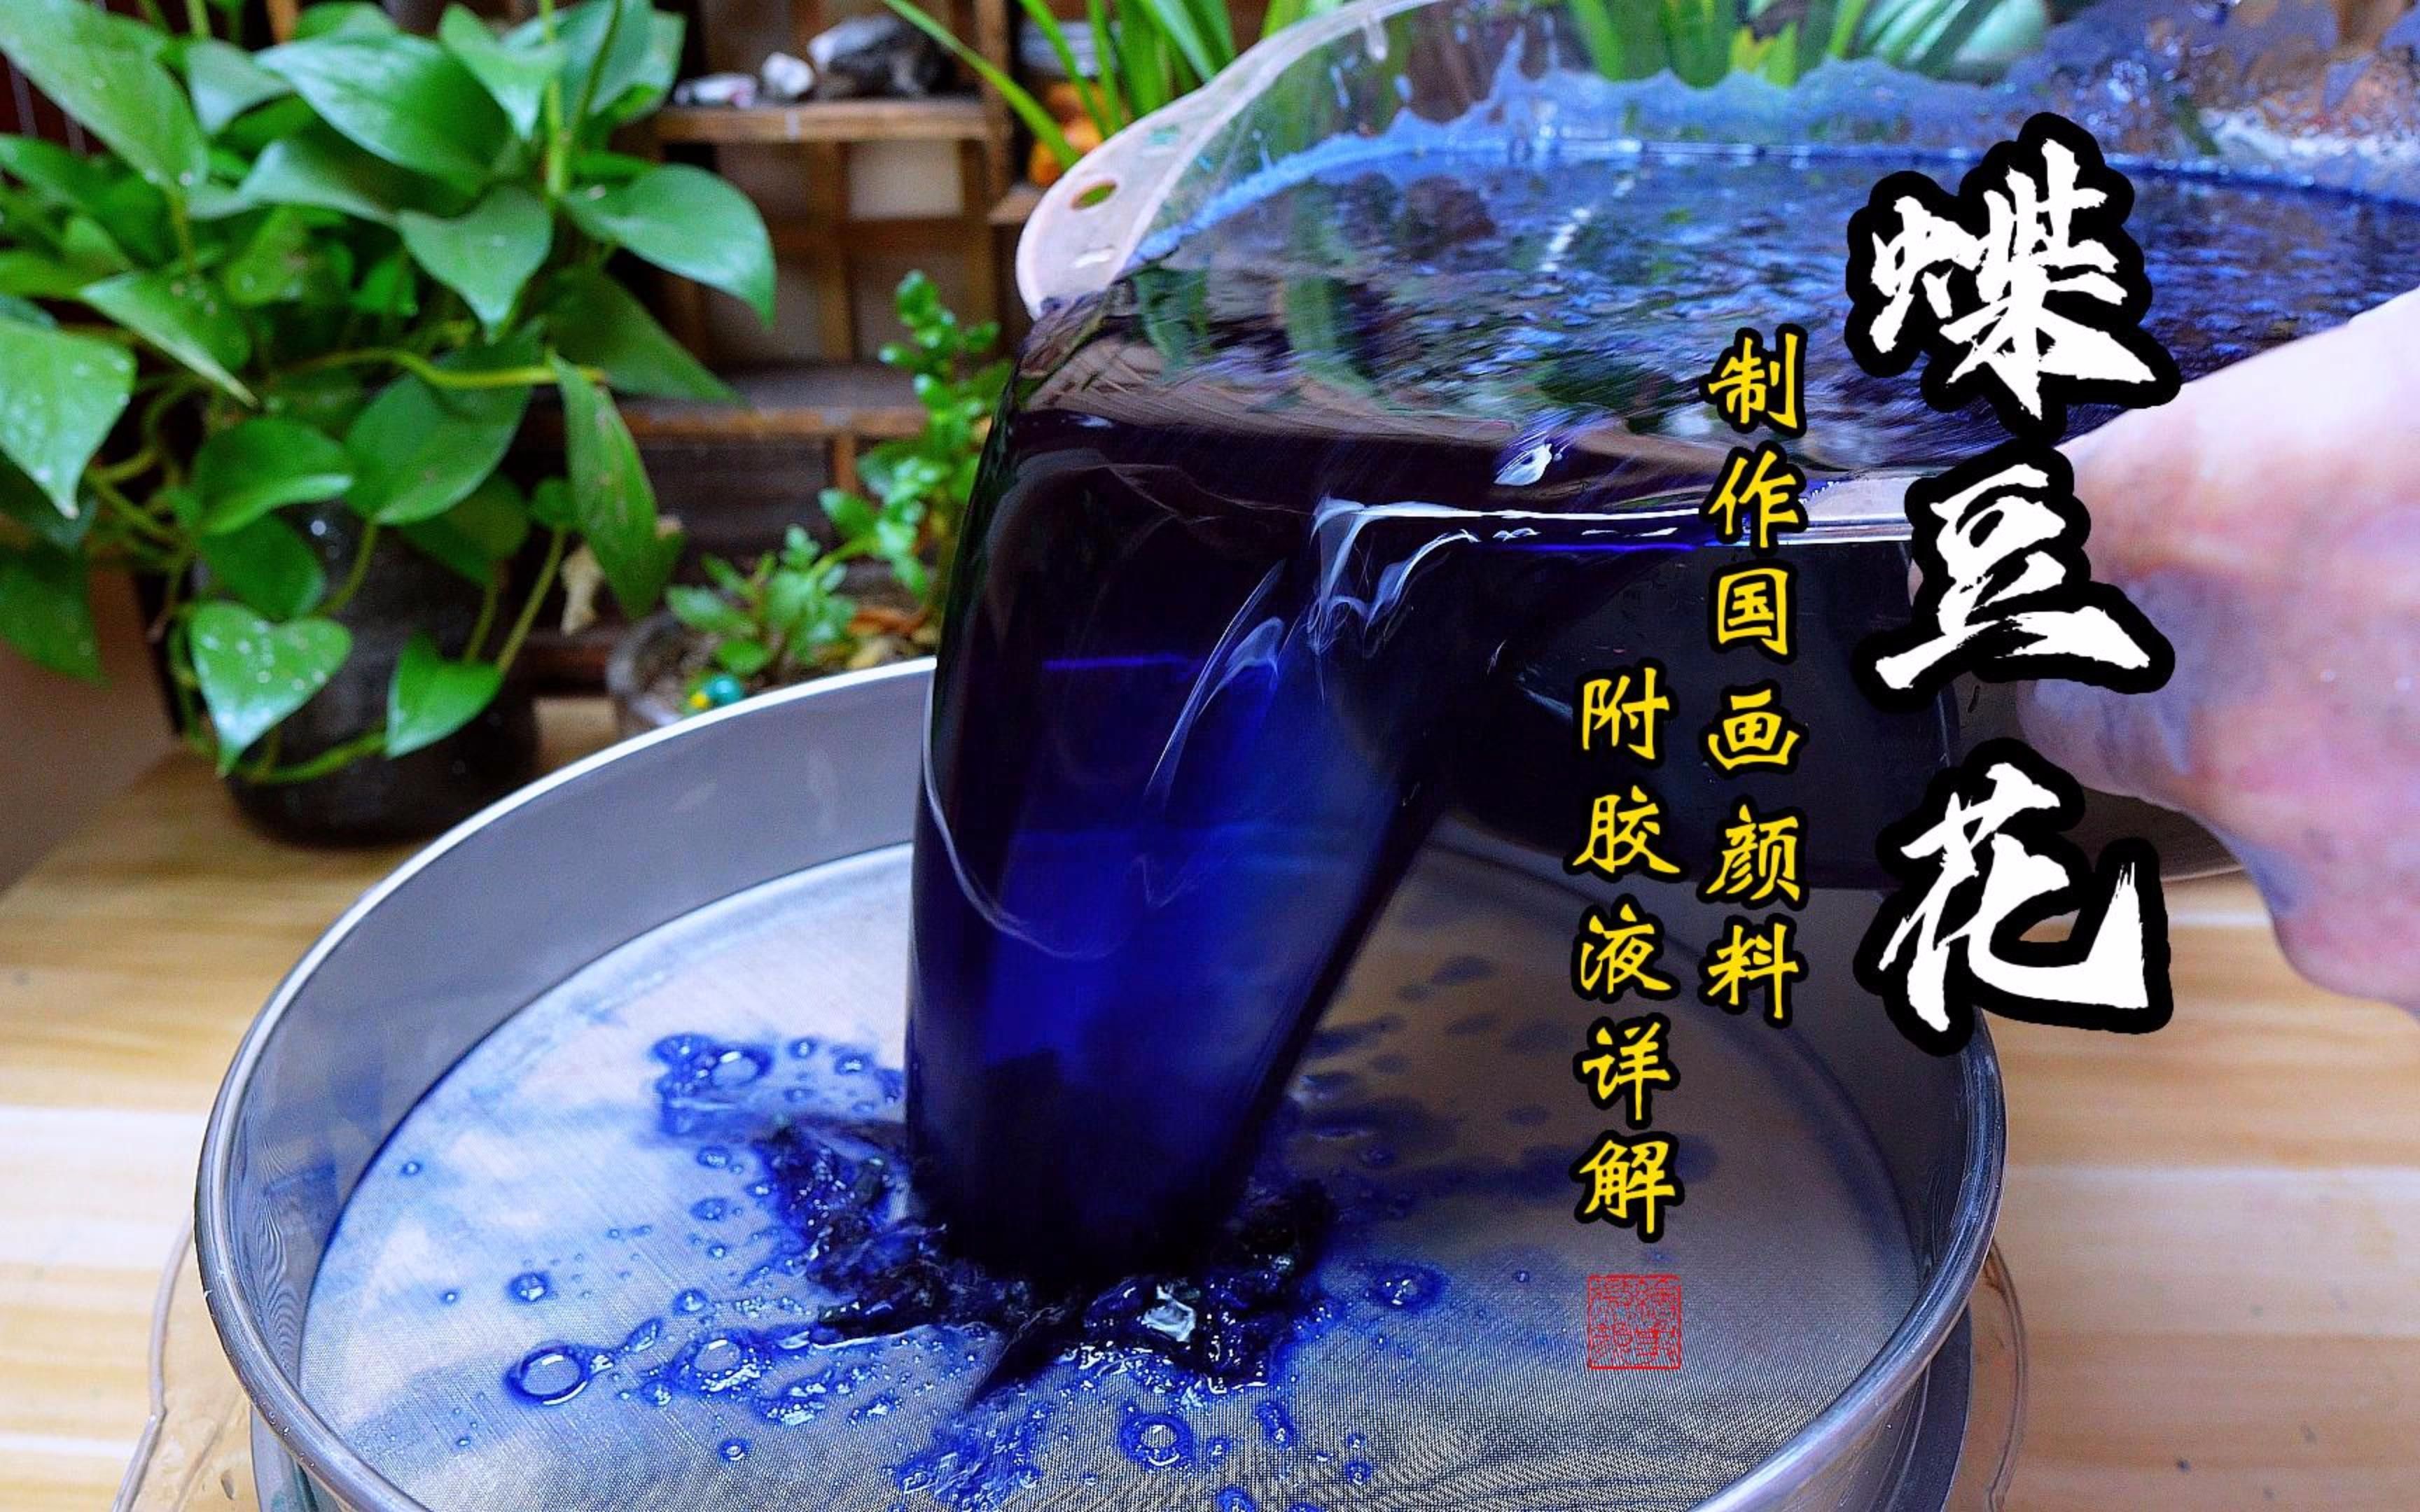 蝶豆花制作一种蓝绿相间的颜料  这个变化过程是相当的丰富  结尾附胶液调配使用储存方法